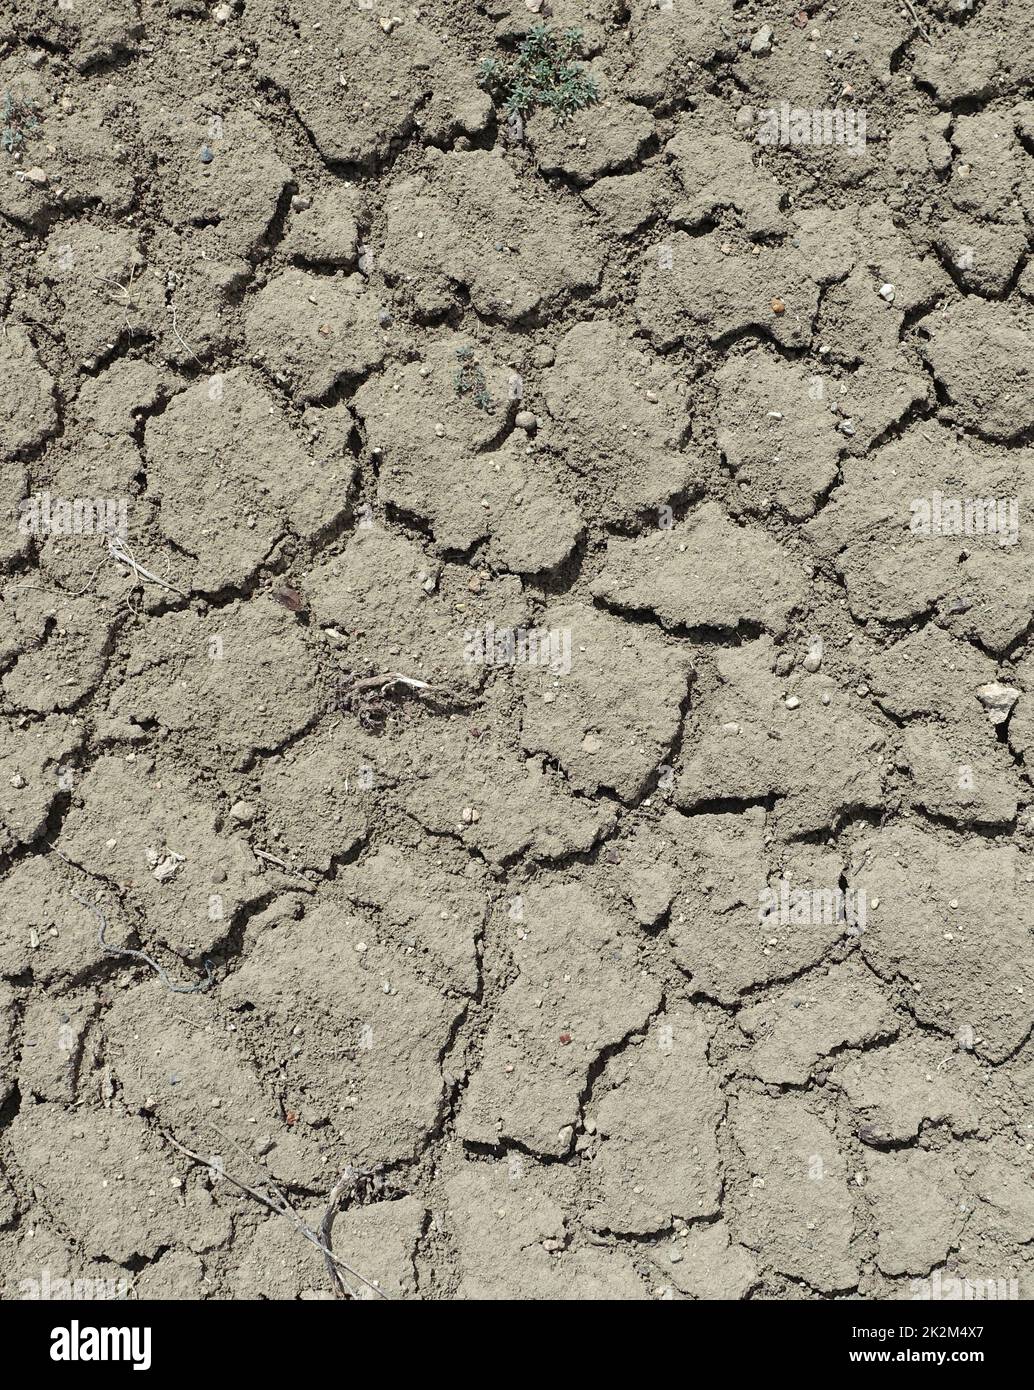 Craquage et fractionnement des sols dus à la soif, à la sécheresse dans le monde, aux sols fissurés et fendus Banque D'Images